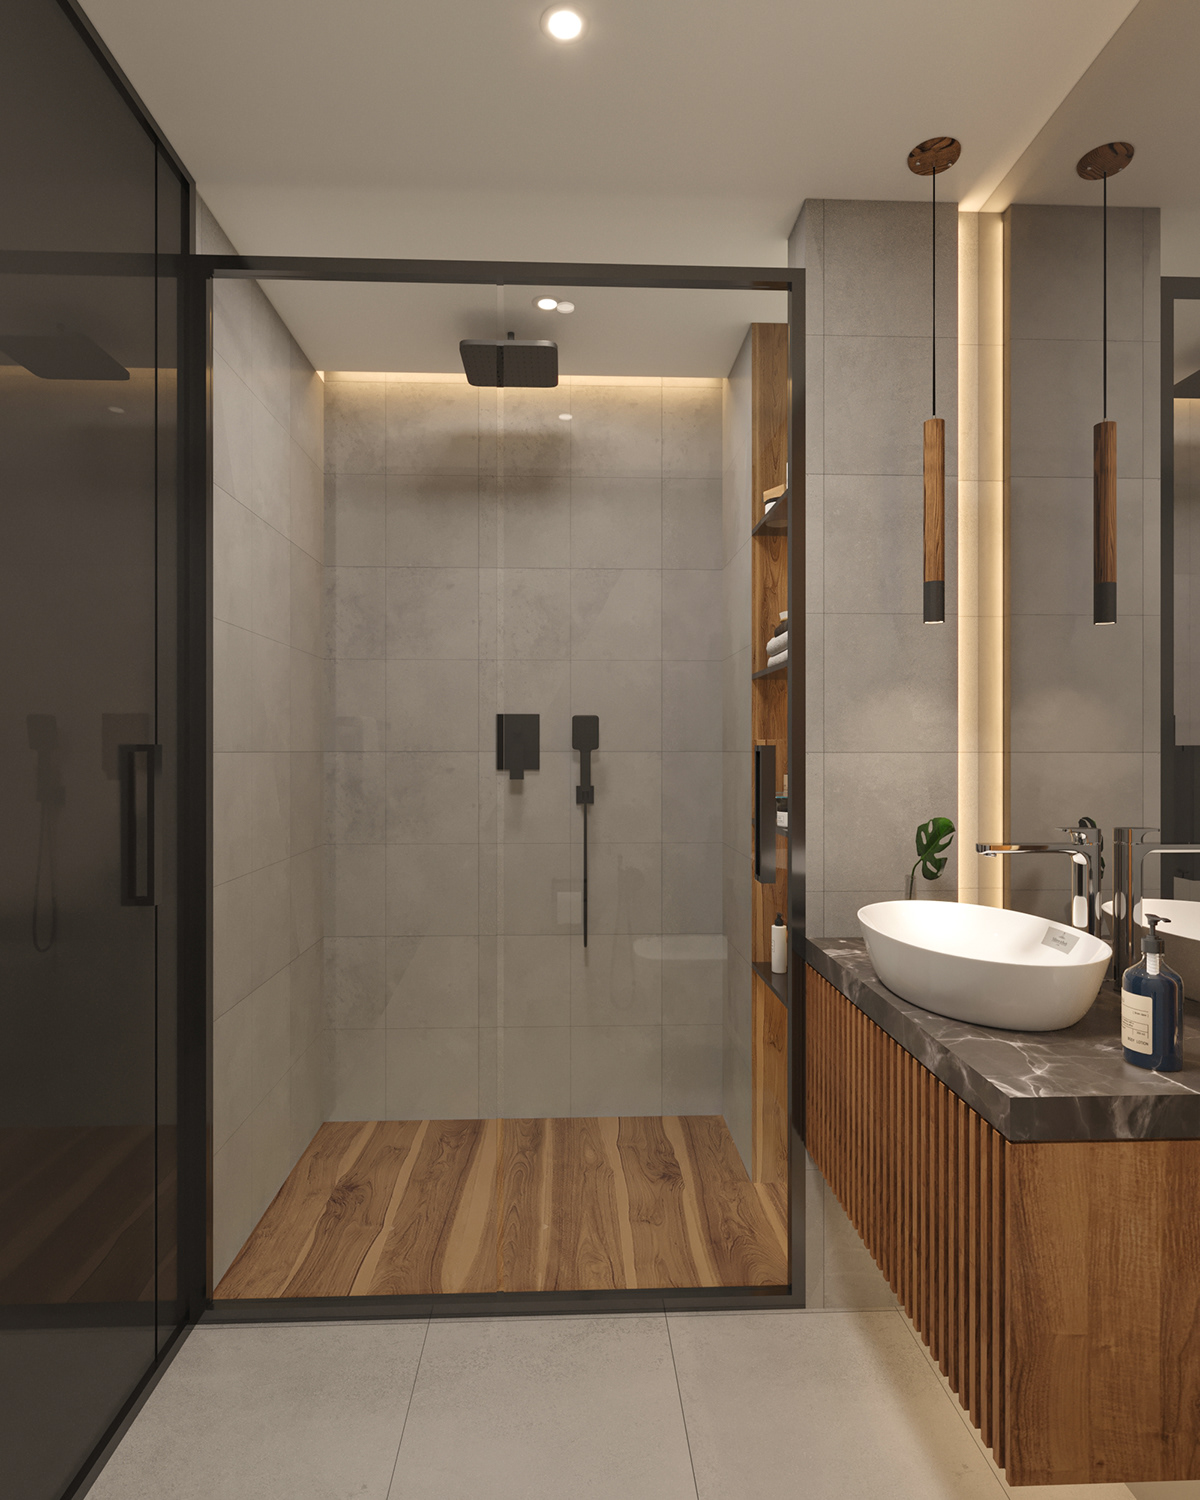 bathroom modern architecture interior design  visualization Render 3ds max corona design Project